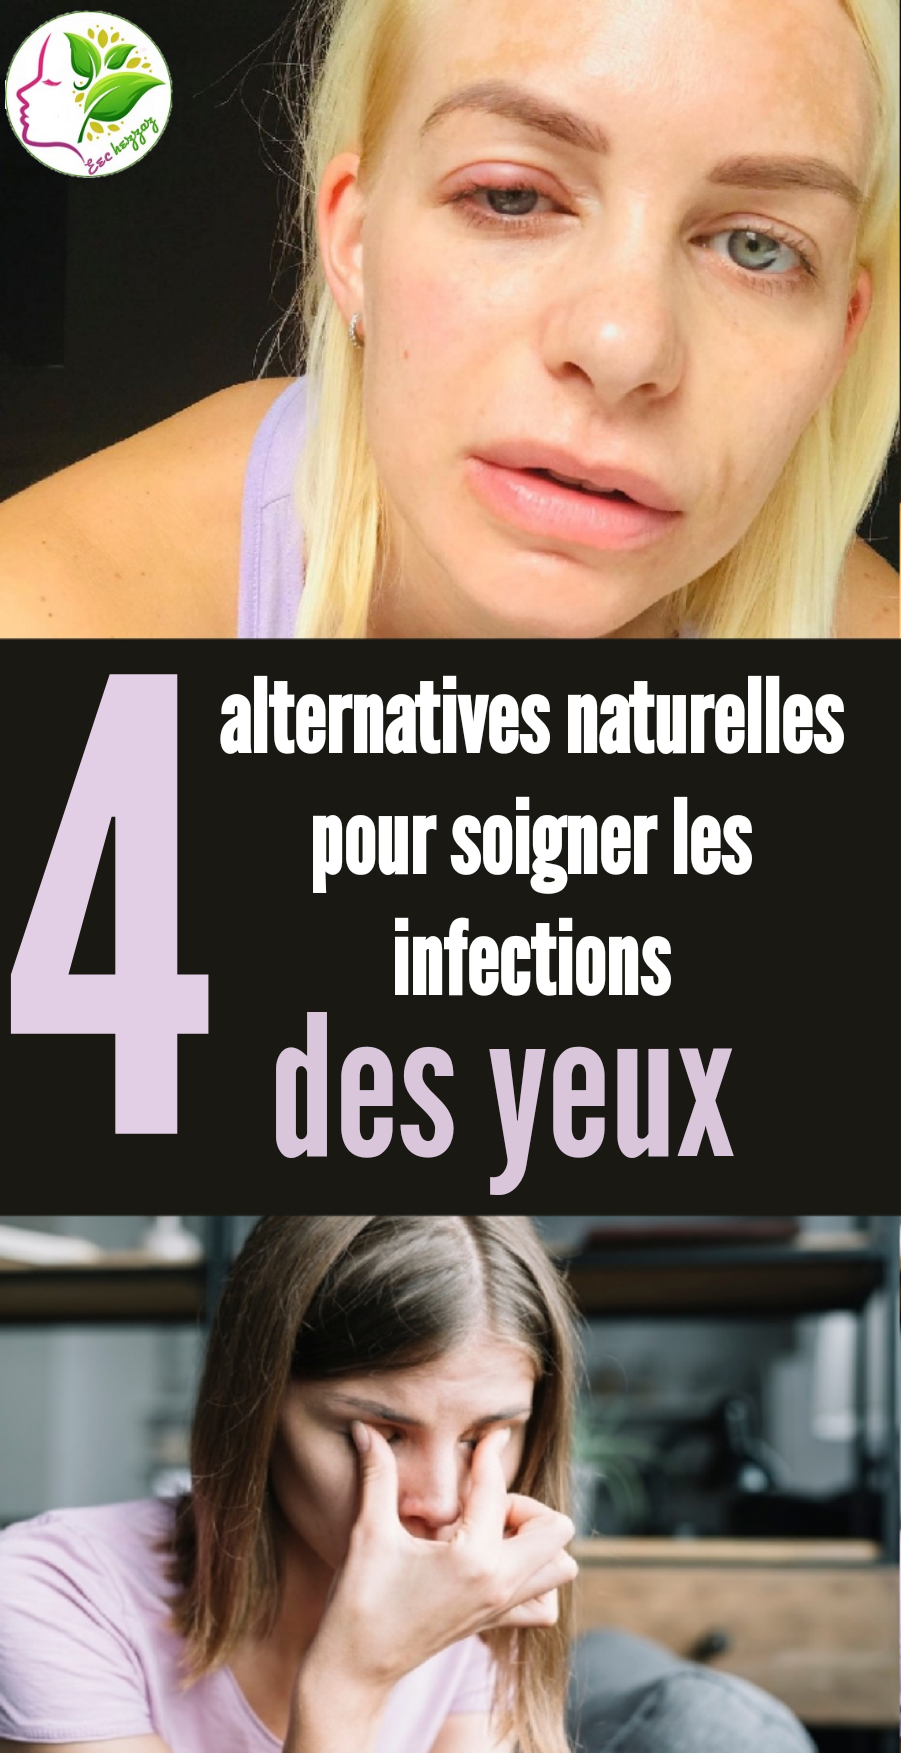 4 alternatives naturelles pour soigner les infections des yeux